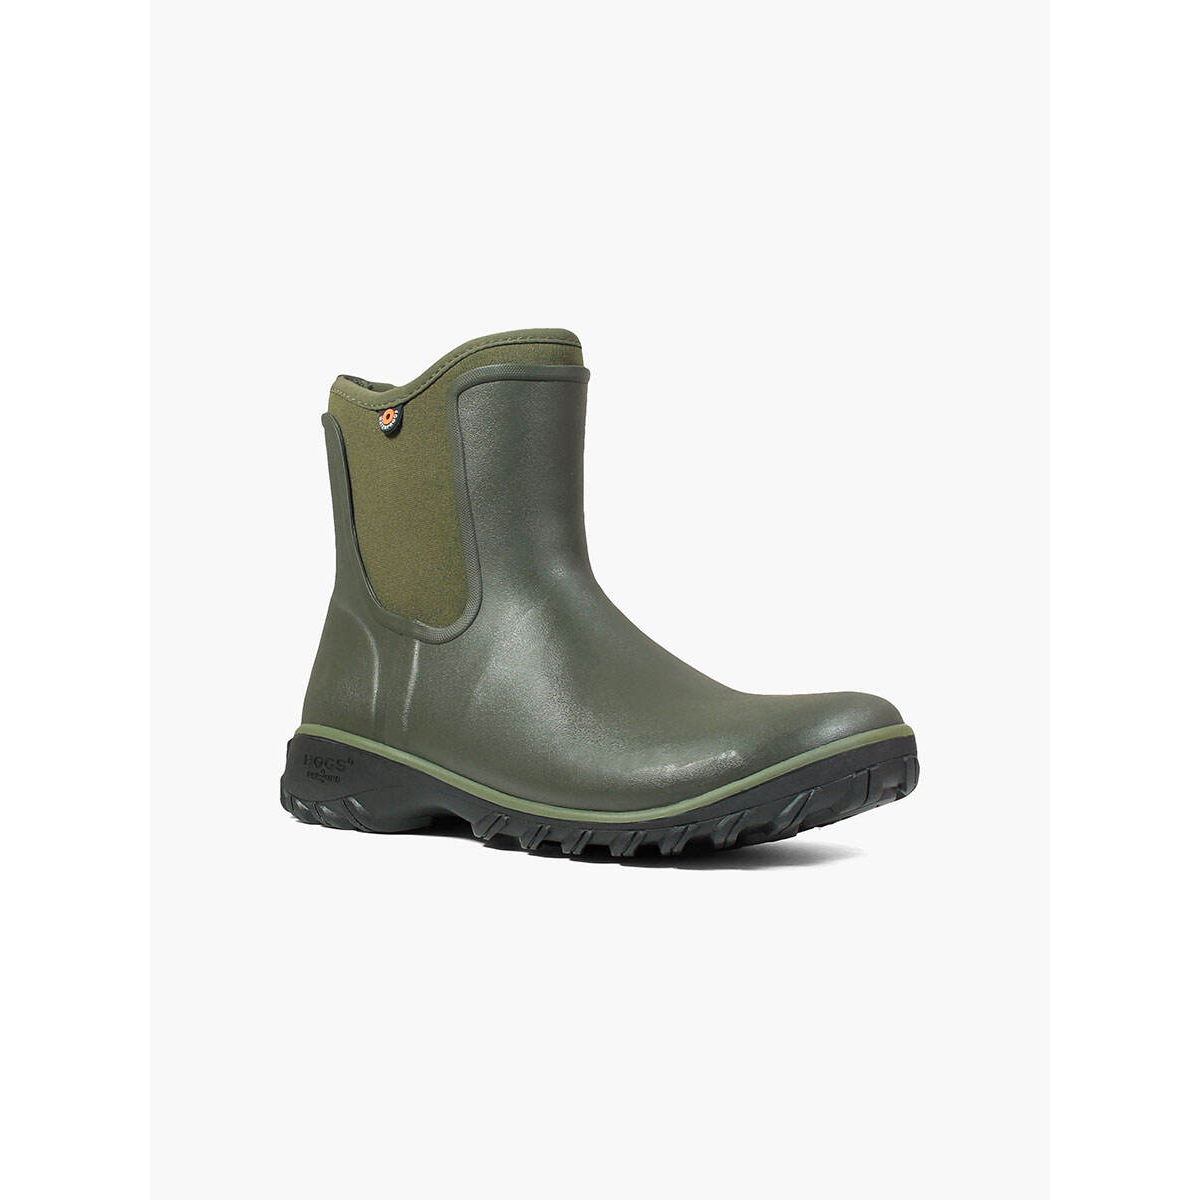 BOGS Women's Sauvie Slip On Waterproof Rain Boots Sage - 72203-306 SAGE - SAGE, 7